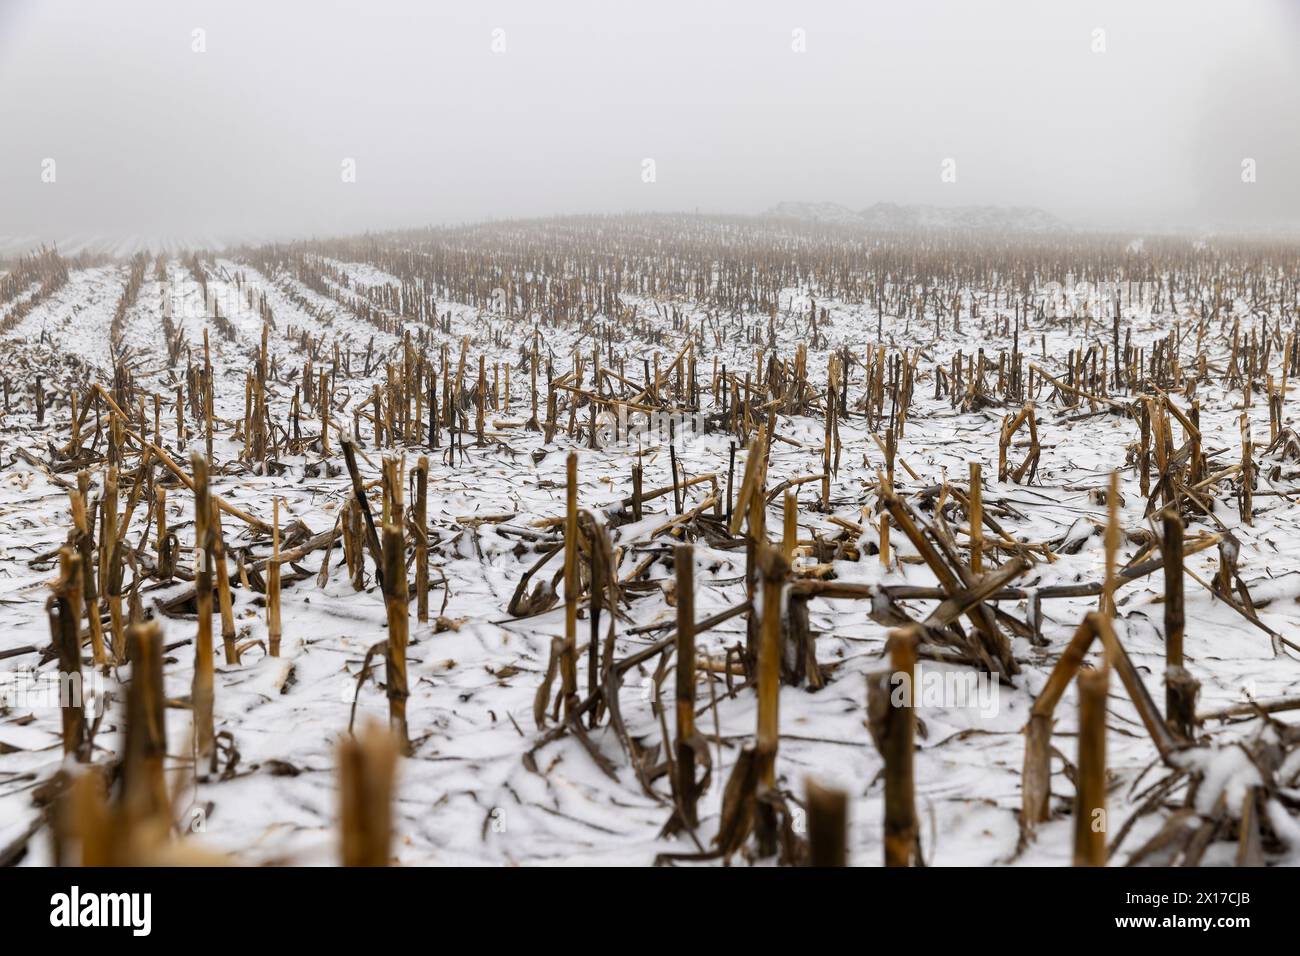 Un champ de maïs enneigé en hiver, le maïs se trouve dans la neige après la récolte et les chutes de neige Banque D'Images